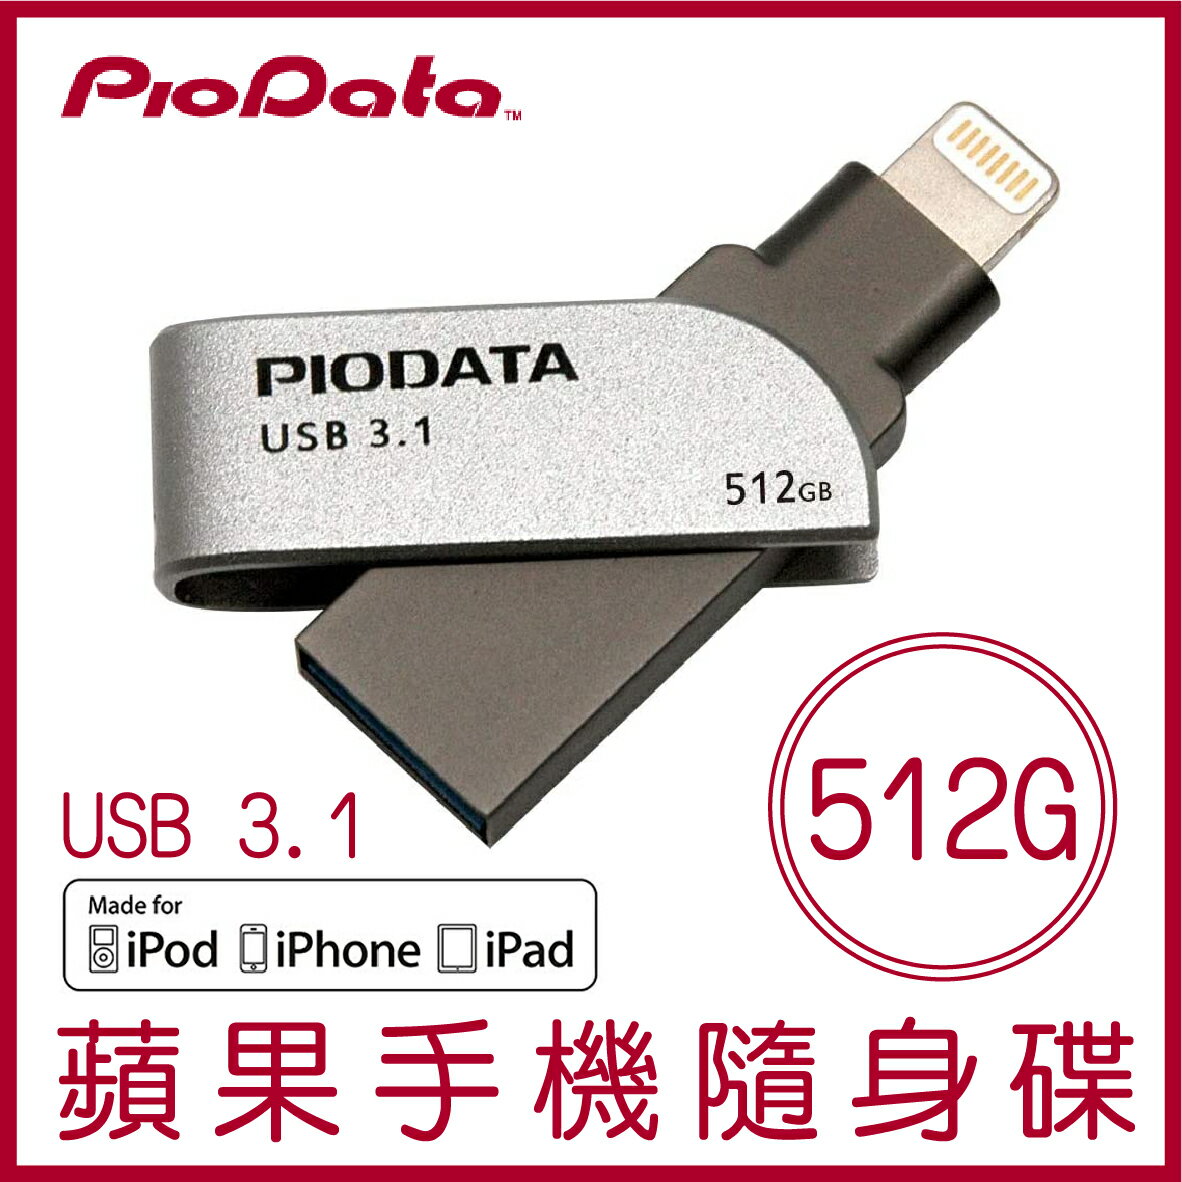 【最高22%點數】【現貨】PIODATA iXflash 512GB Lightning USB3.1 蘋果隨身碟 iOS專用 OTG 雙用隨身碟【限定樂天APP下單】